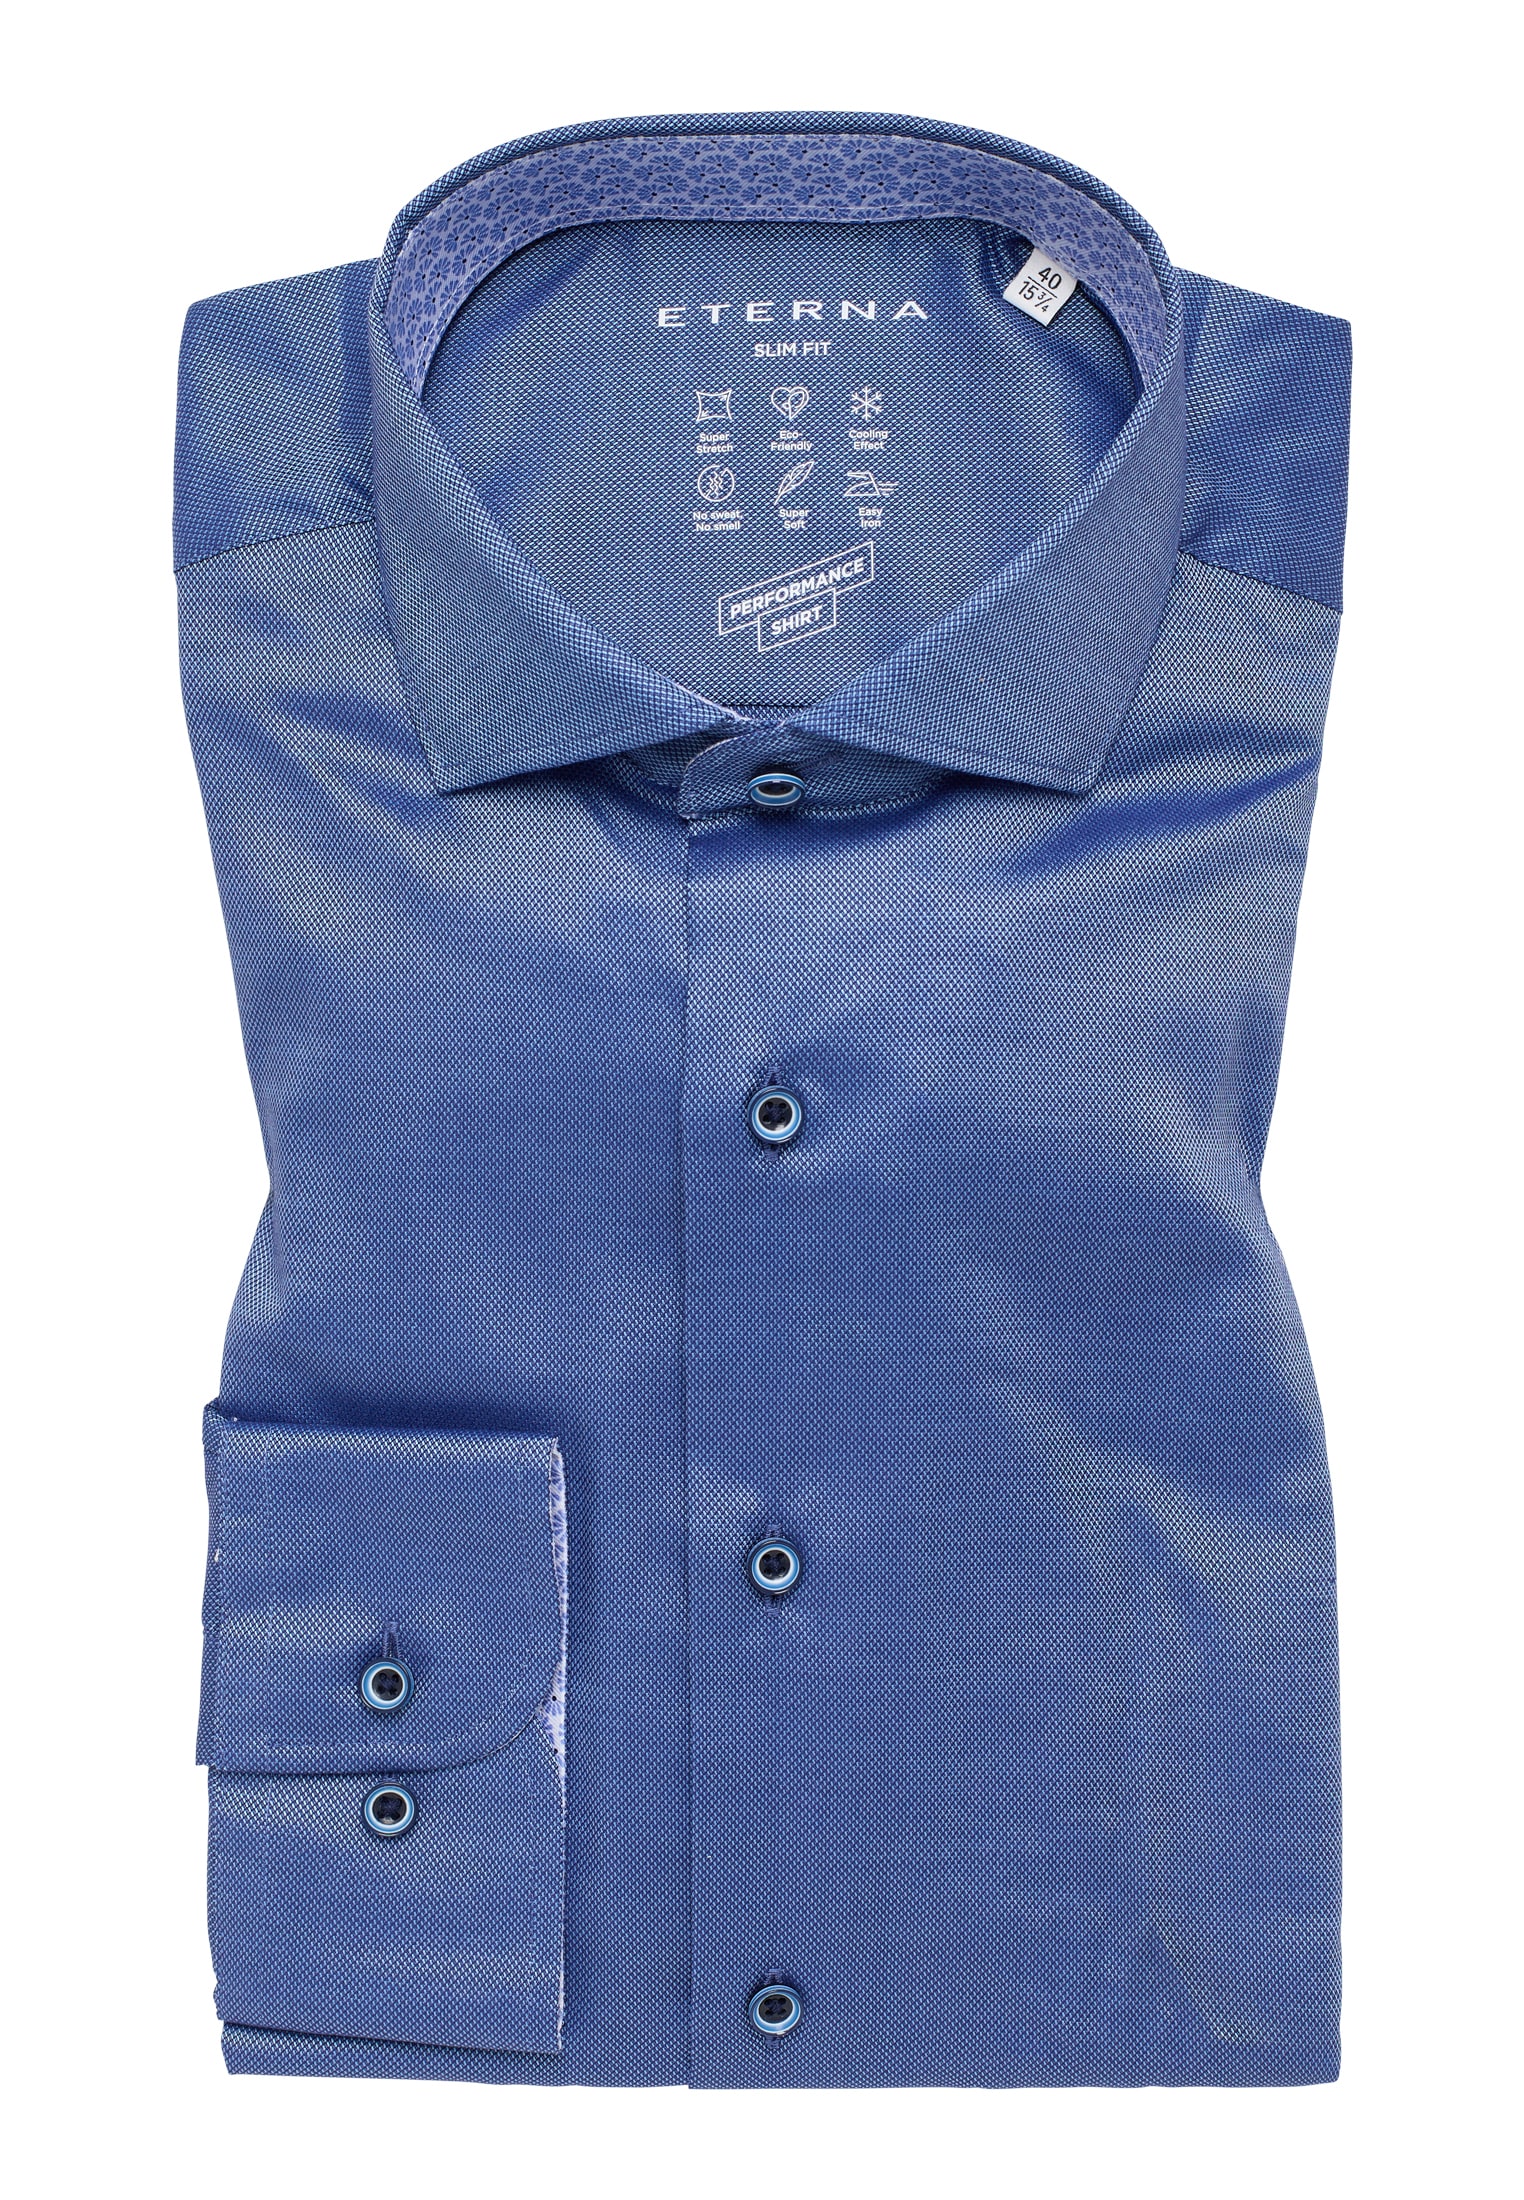 blau blau 1SH12542-01-41-41-1/1 | strukturiert Langarm 41 FIT Shirt | in Performance | | SLIM